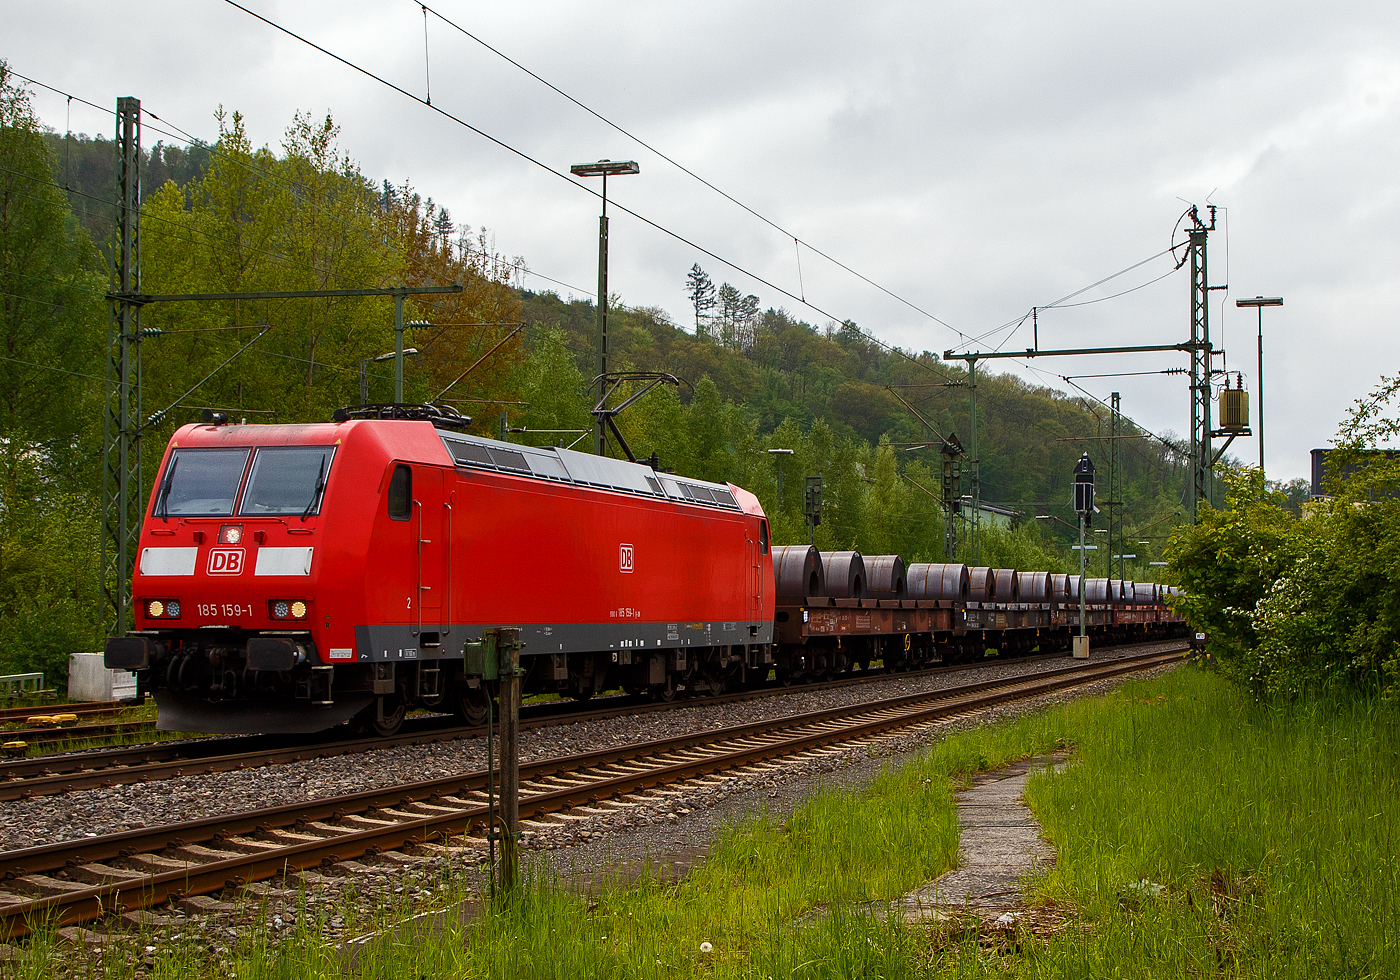 Die 185 159-1 (91 80 6185 159-1 D-DB) der DB Cargo AG fährt am 11.05.2023, mit einem Warmband-Coilzug (offene sechsachsige Wagen der Gattung Sahmms etc.), durch Niederschelden in Richtung Siegen bzw. Kreuztal.

Die TRAXX F 140 AC1wurde 2003 von der Bombardier Transportation GmbH in Kassel unter der Fabriknummer 33632 gebaut.
